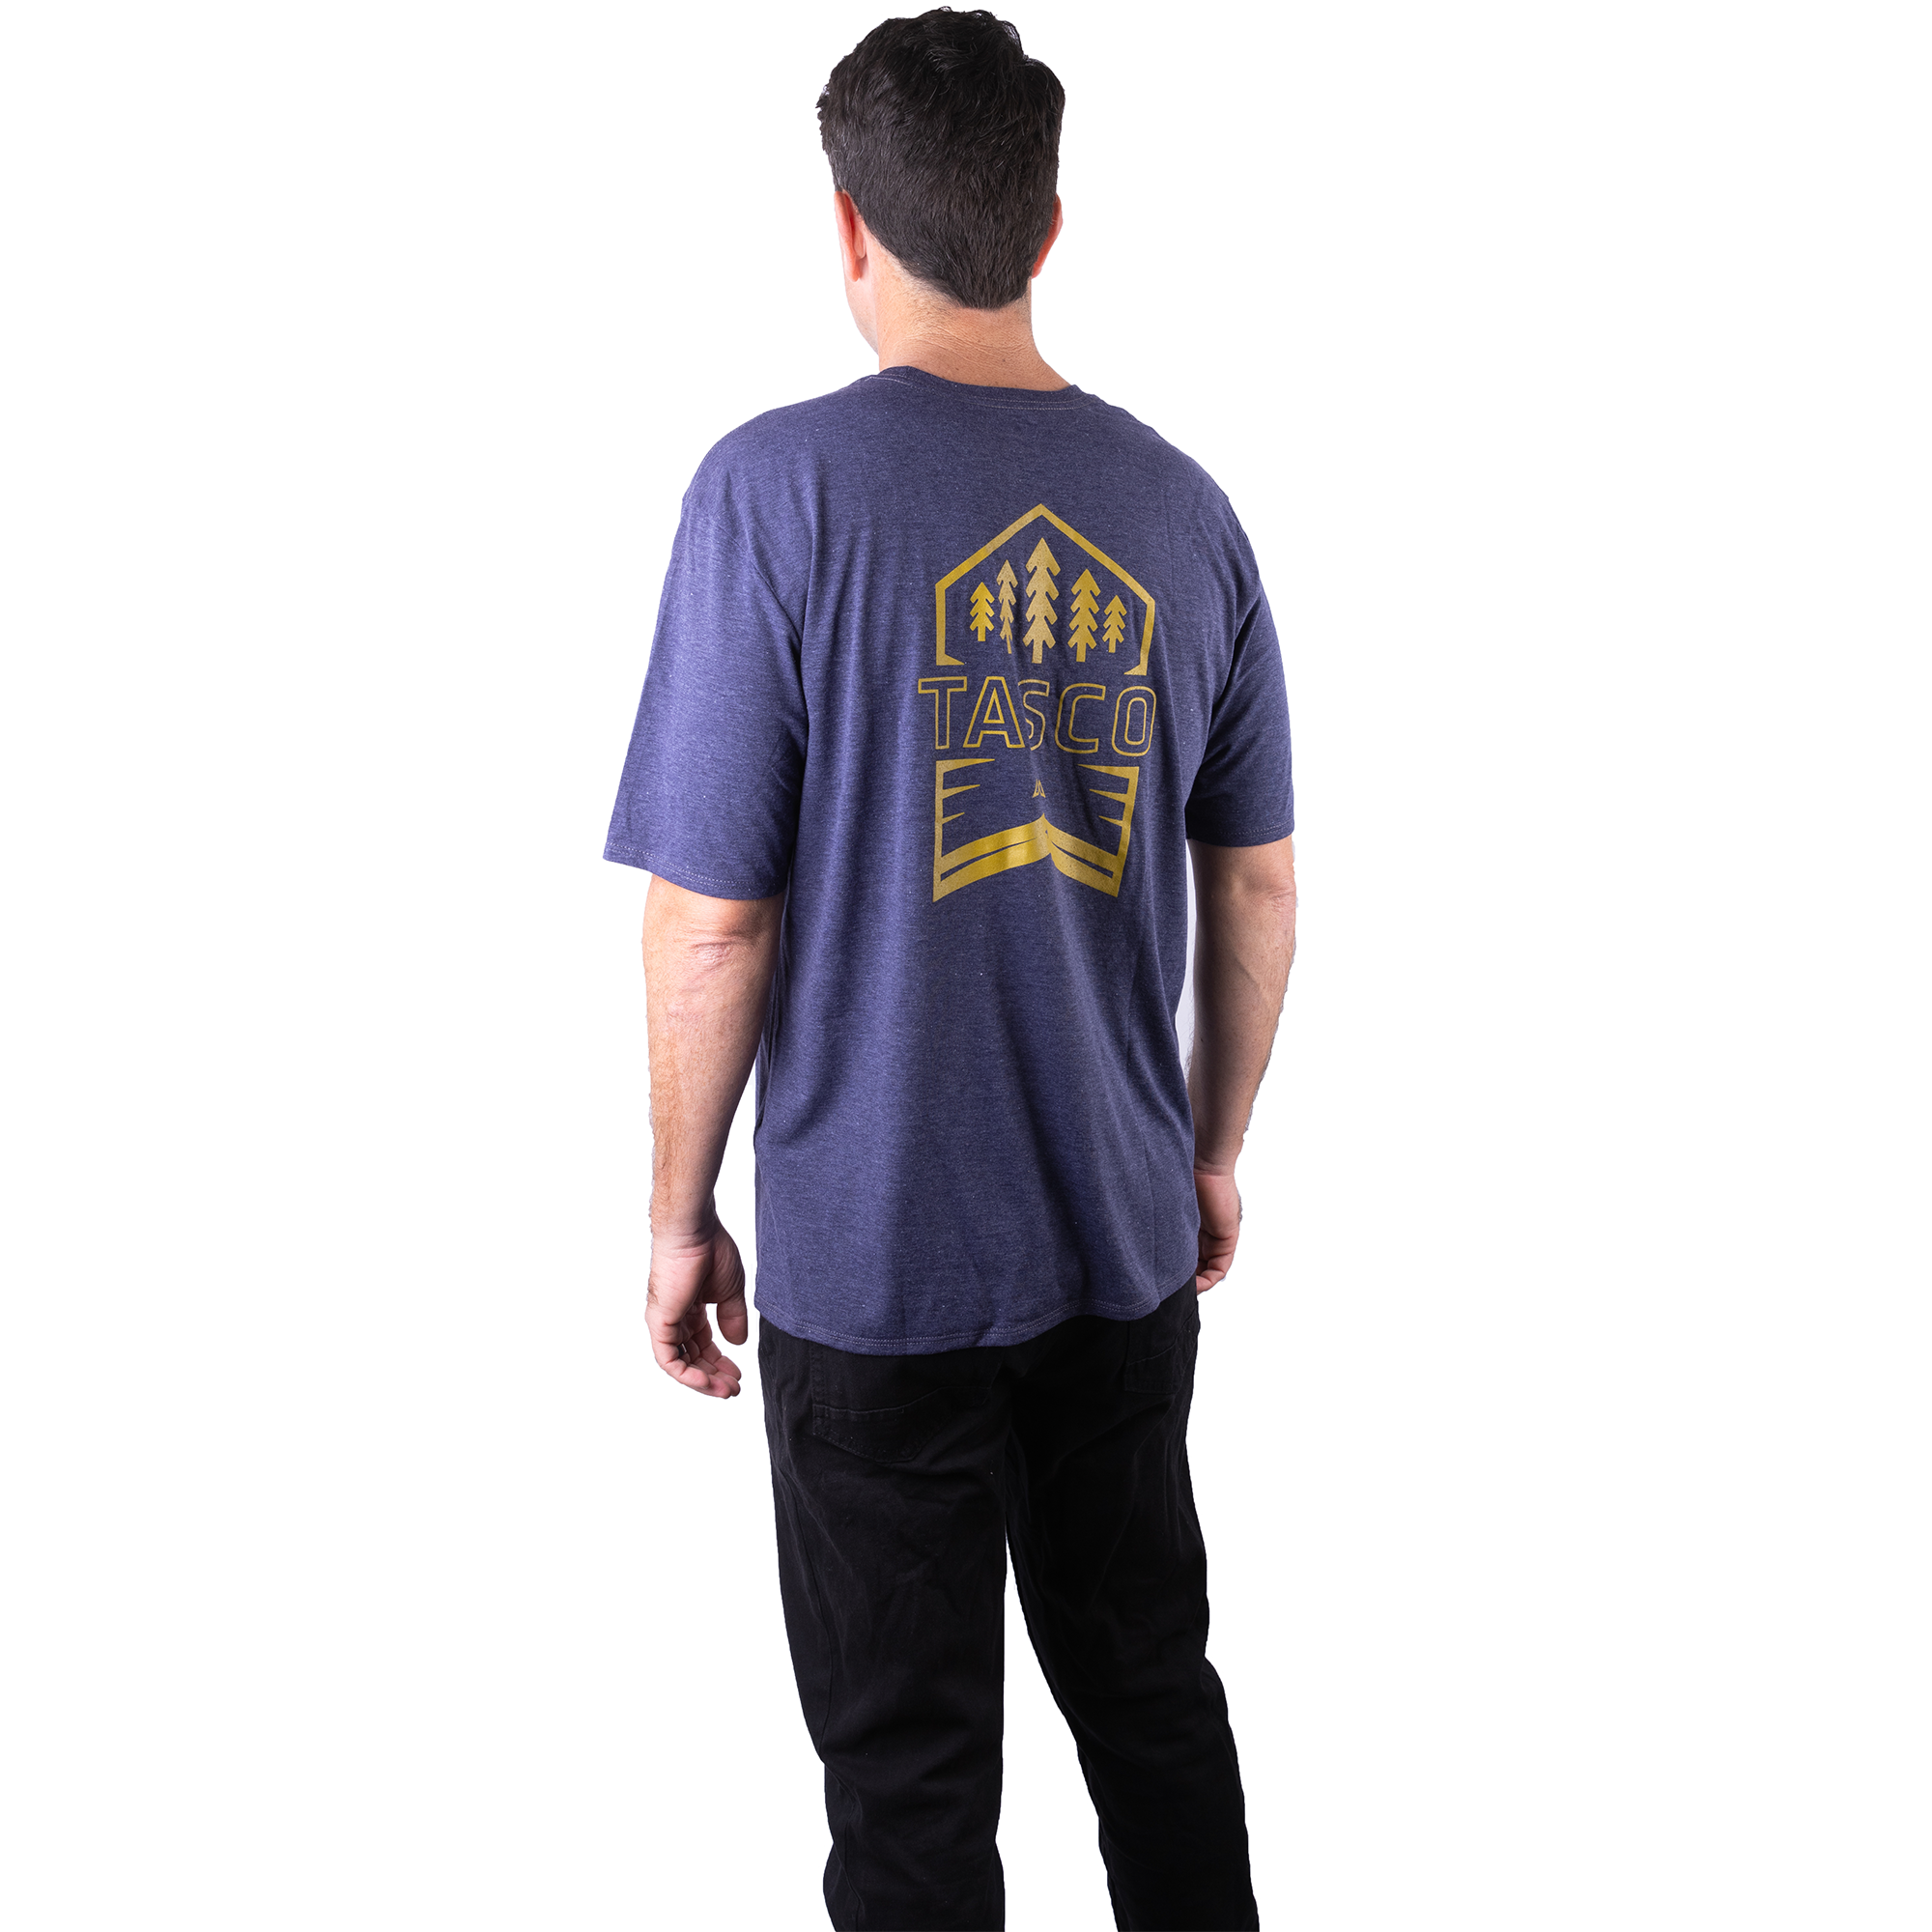 Premium T-Shirt - Arrowhead